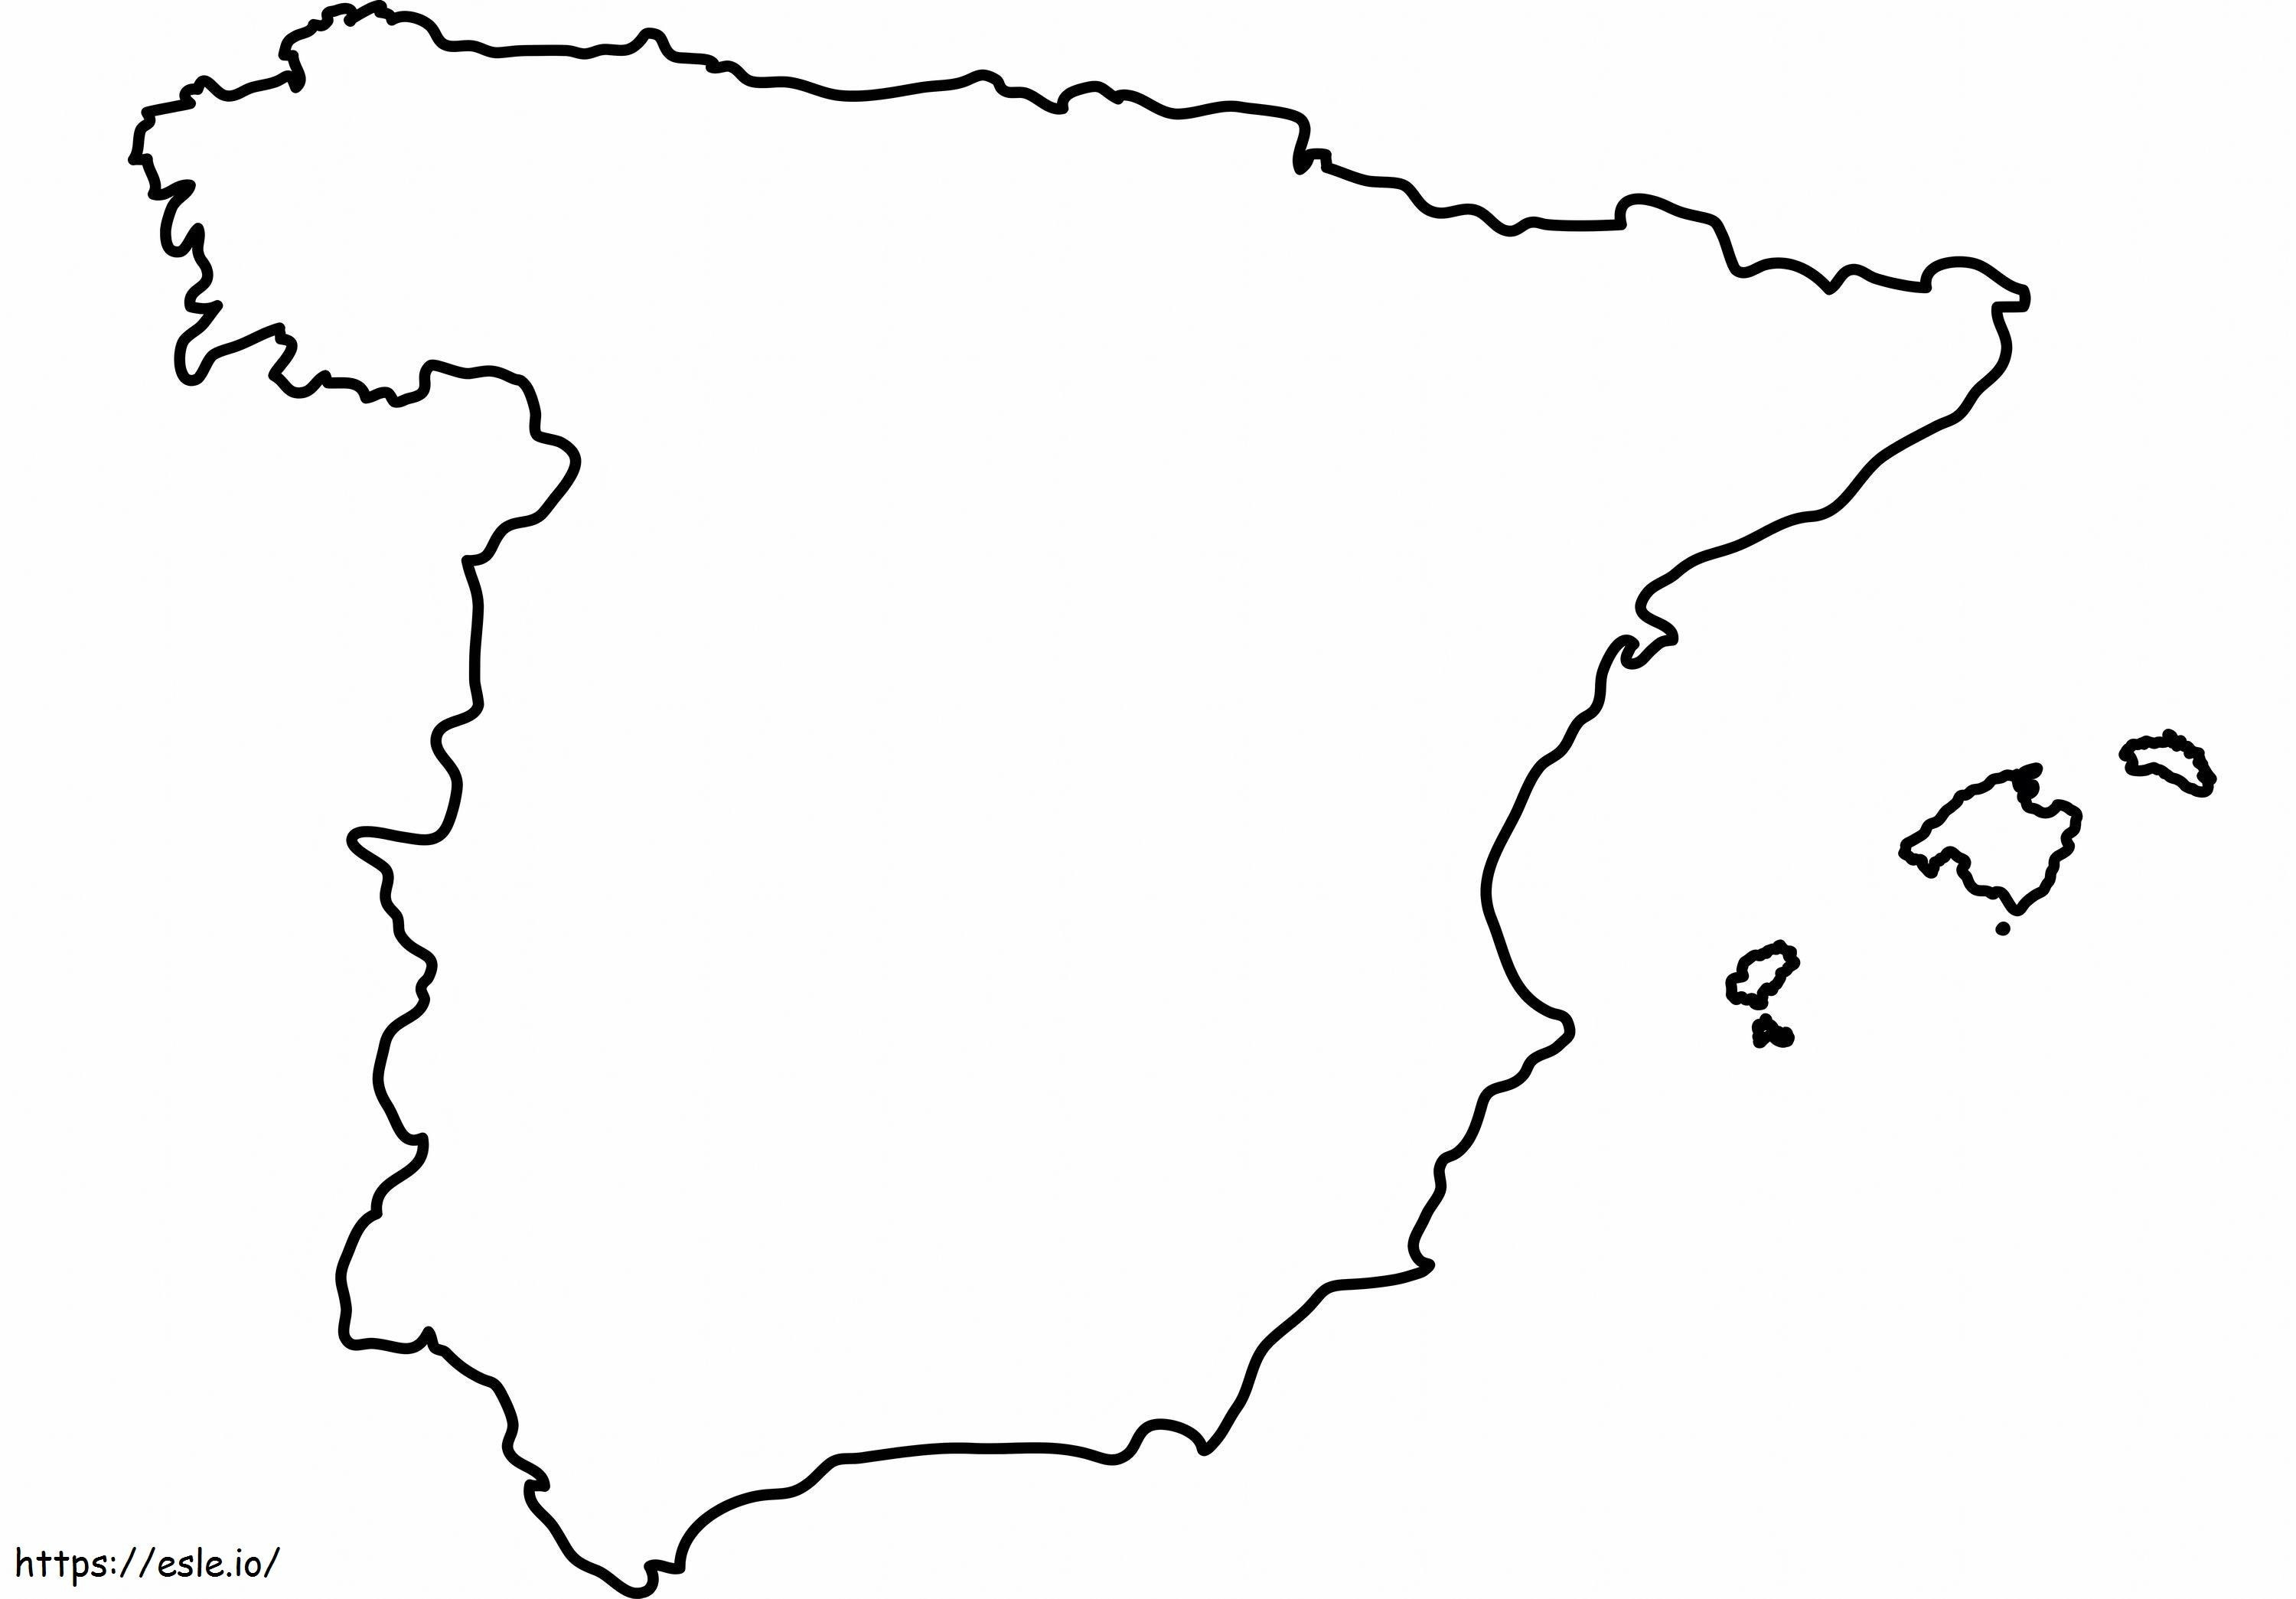 Tyhjä Espanjan kartta skaalattuna väritystä varten värityskuva